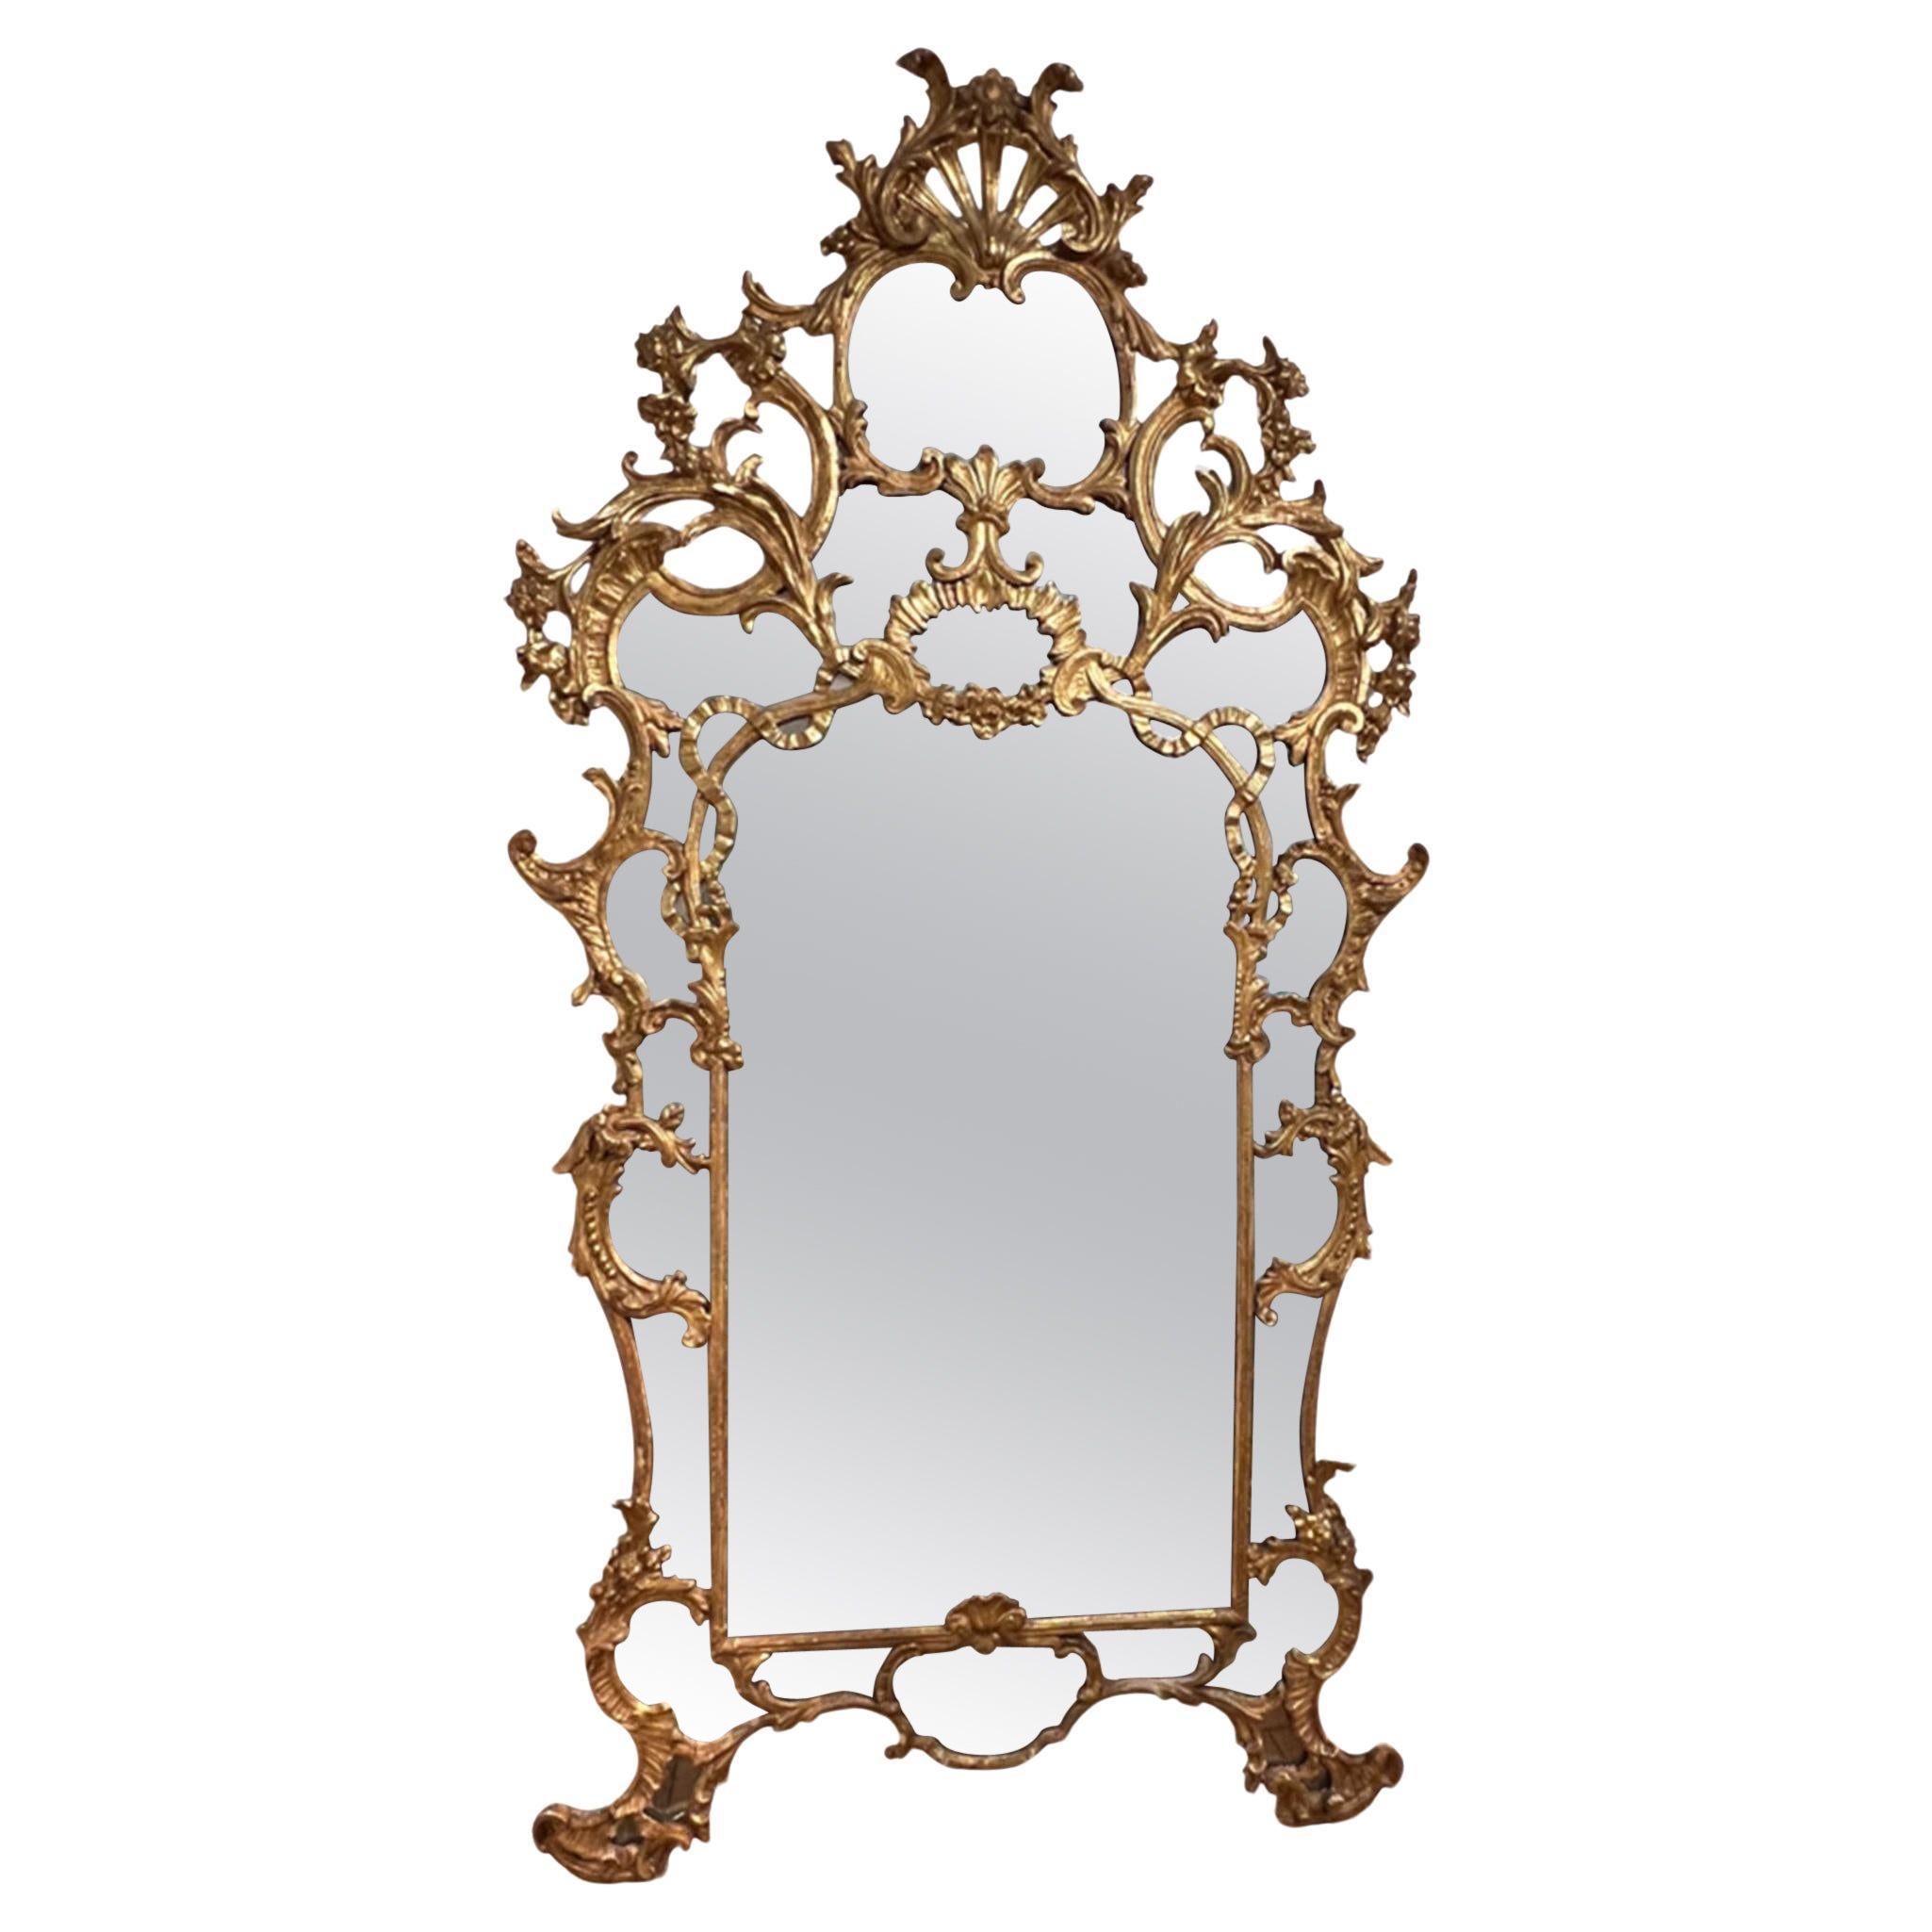 Il s'agit d'un superbe miroir ancien, de grande taille et très décoratif, avec de magnifiques bois.  Encadrement sculpté et verre d'origine. 

Jetez un coup d'œil à toutes nos photos pour voir les détails et l'incroyable savoir-faire.

Un miroir